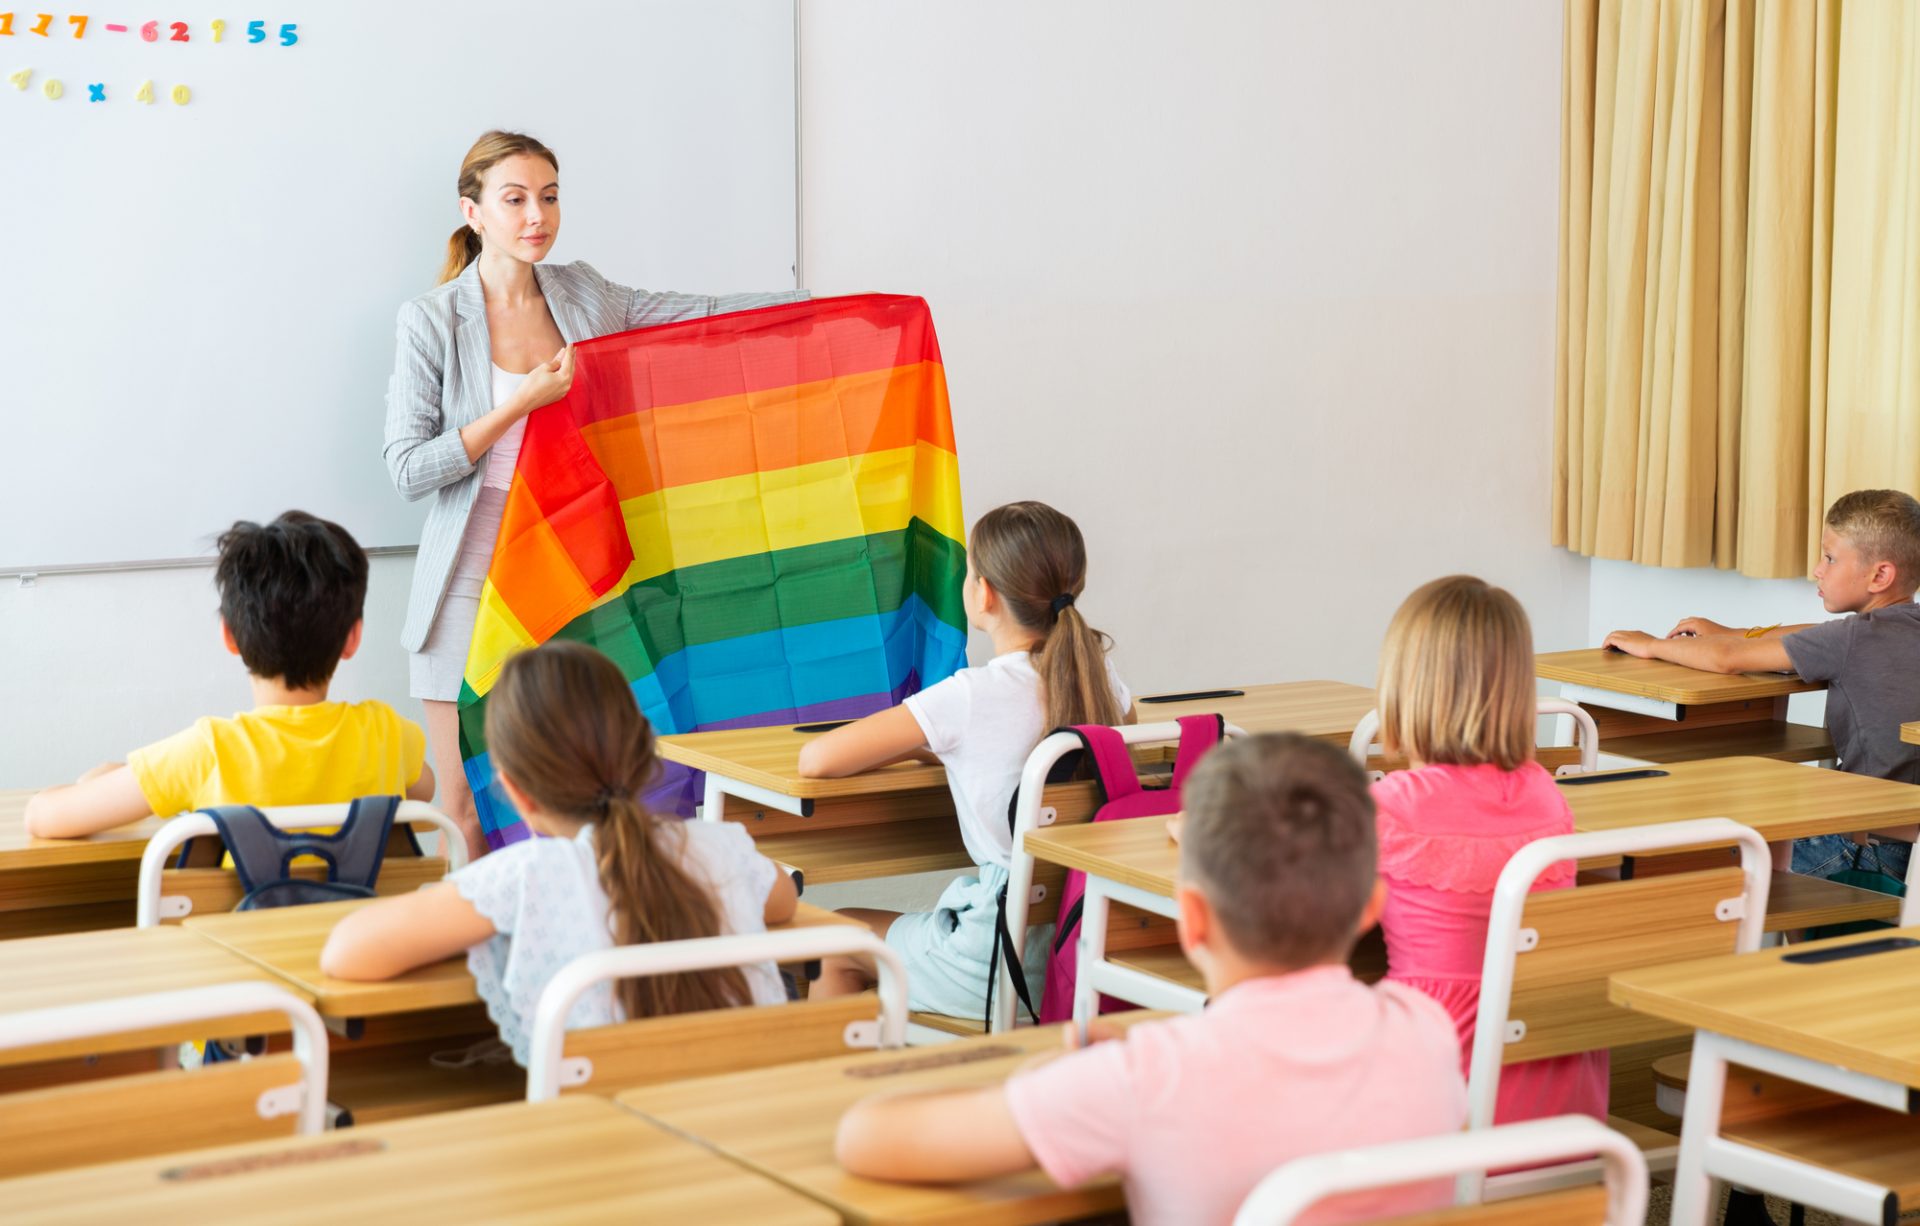 Senat u Floridi zakonom onemogućio LGBT agendu i aktivizam nad djecom od četiri do osam godina